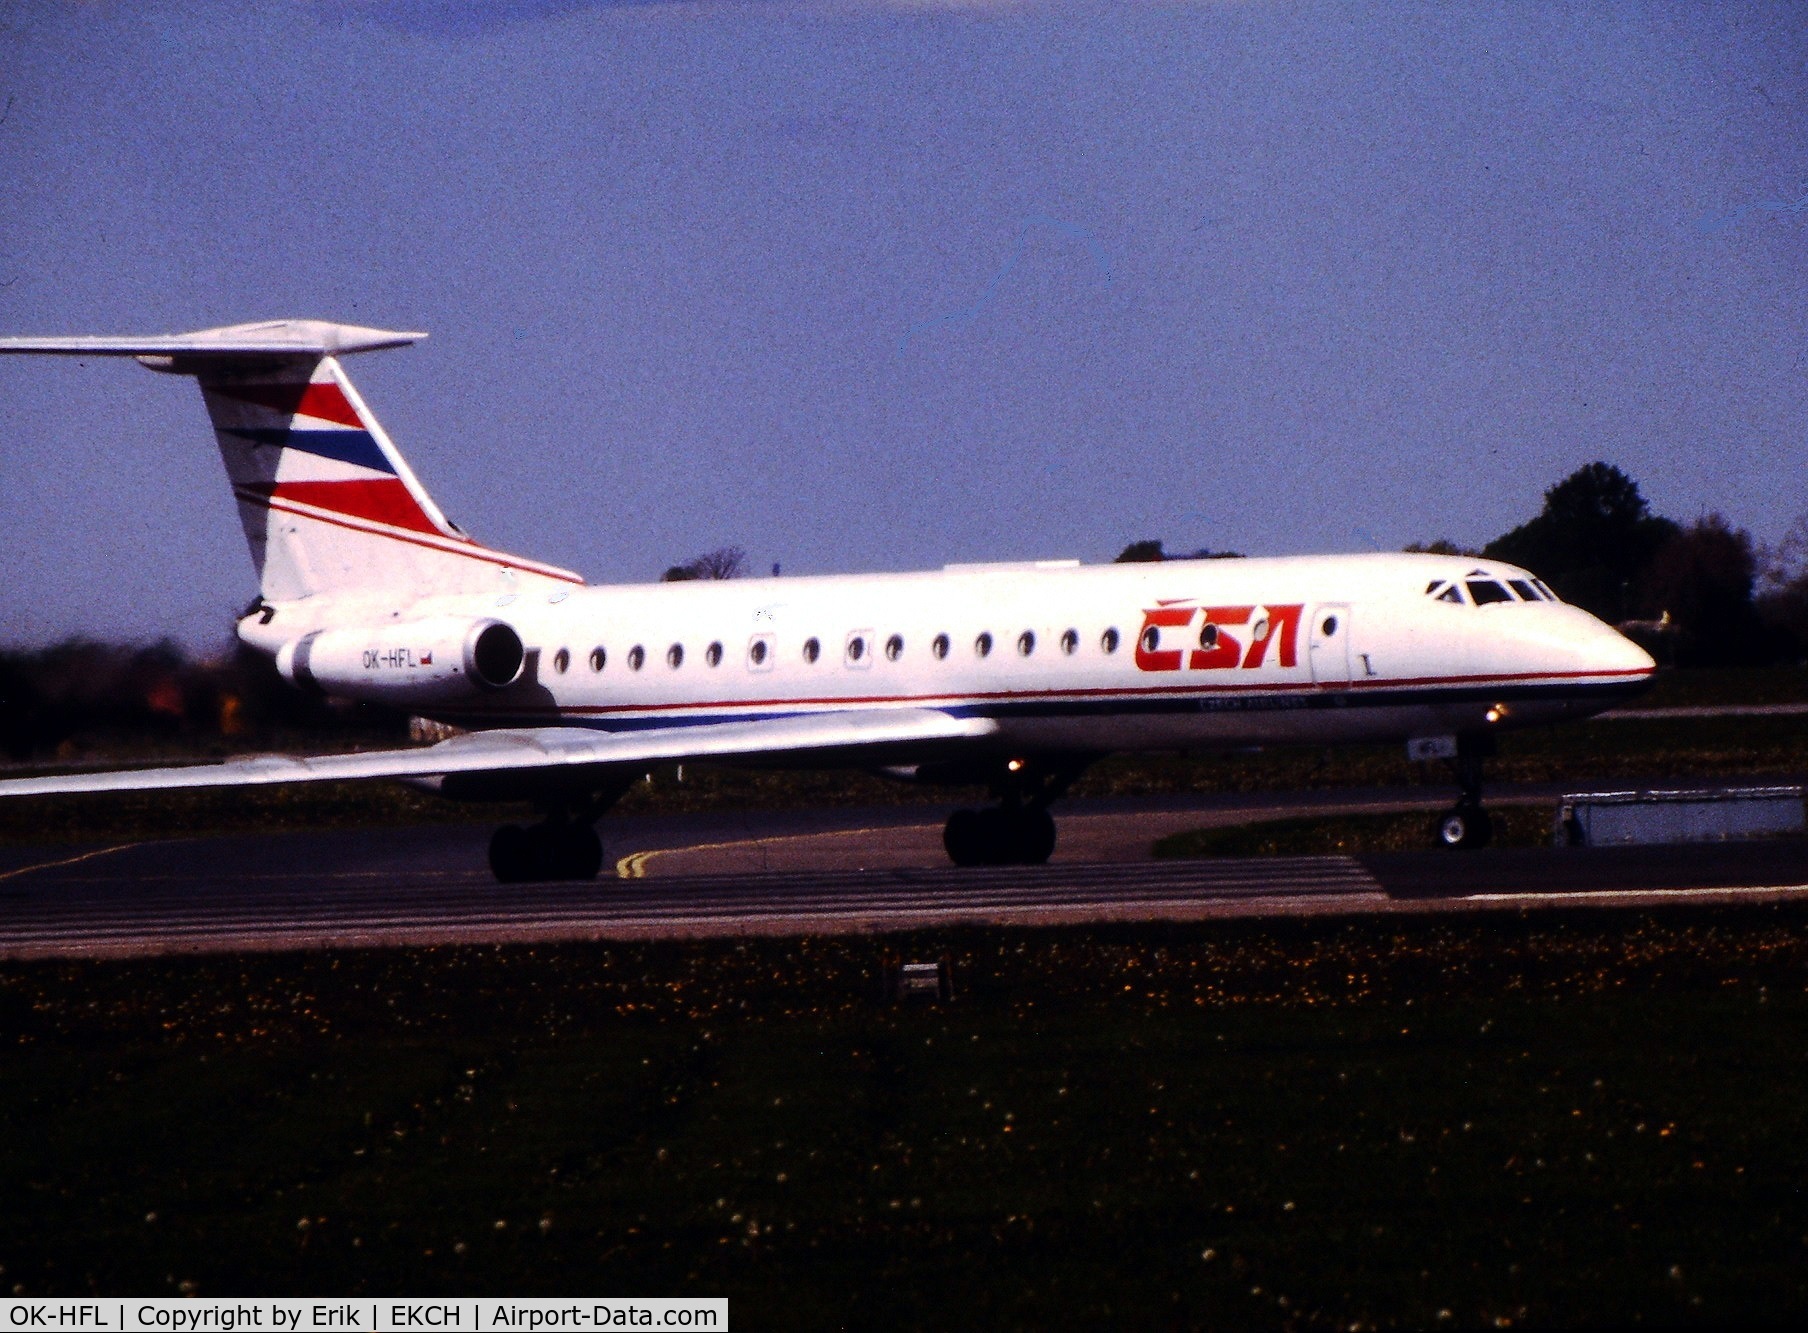 OK-HFL, 1977 Tupolev Tu-134A C/N 49913, OK-HFL ready for takeoff rw 04R
Scaned slide